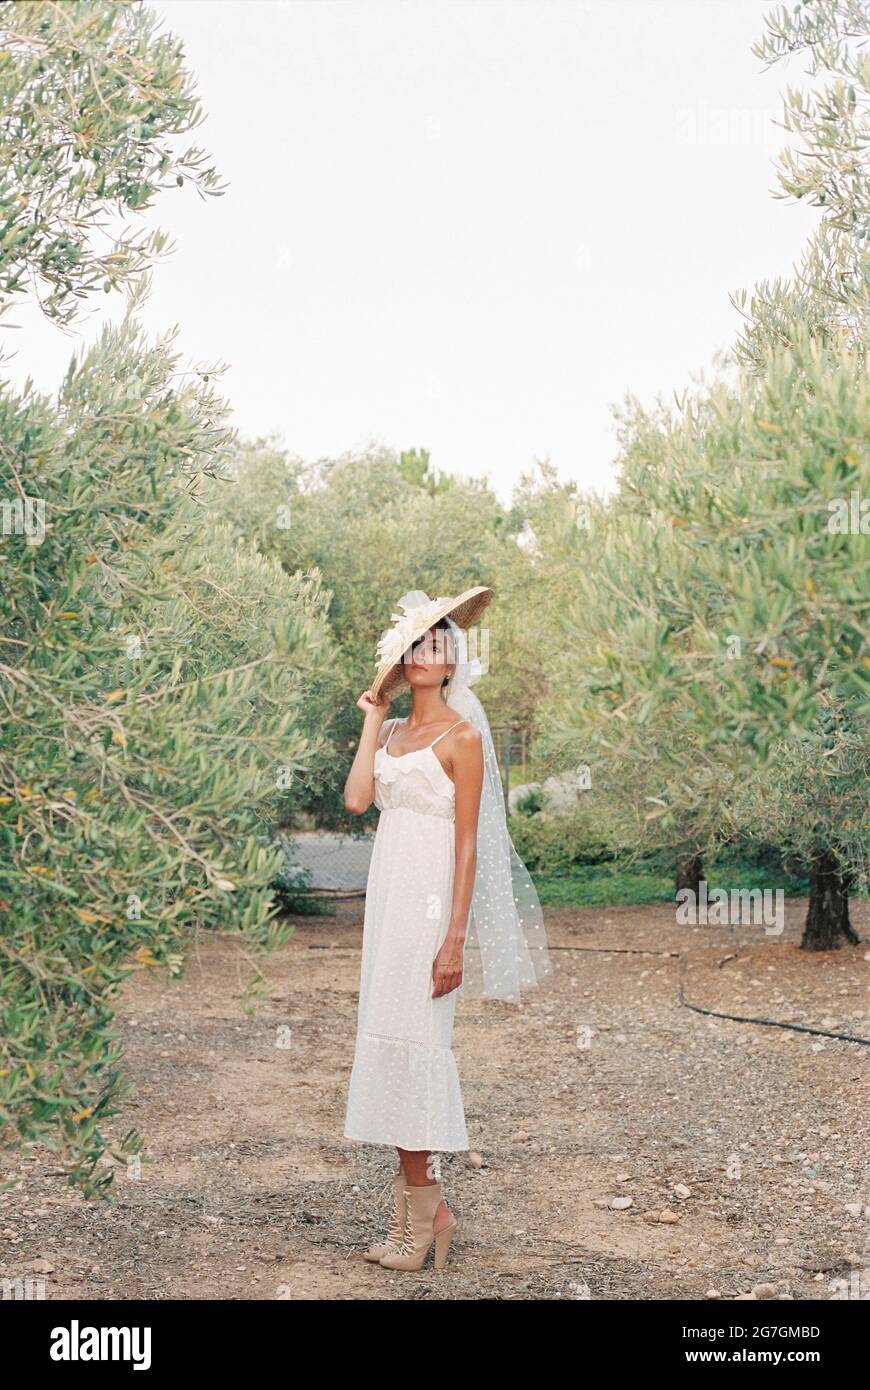 Vue latérale de l'élégante mariée en robe blanche et chapeau de paille  debout dans le jardin en campagne et regardant l'appareil photo Photo Stock  - Alamy